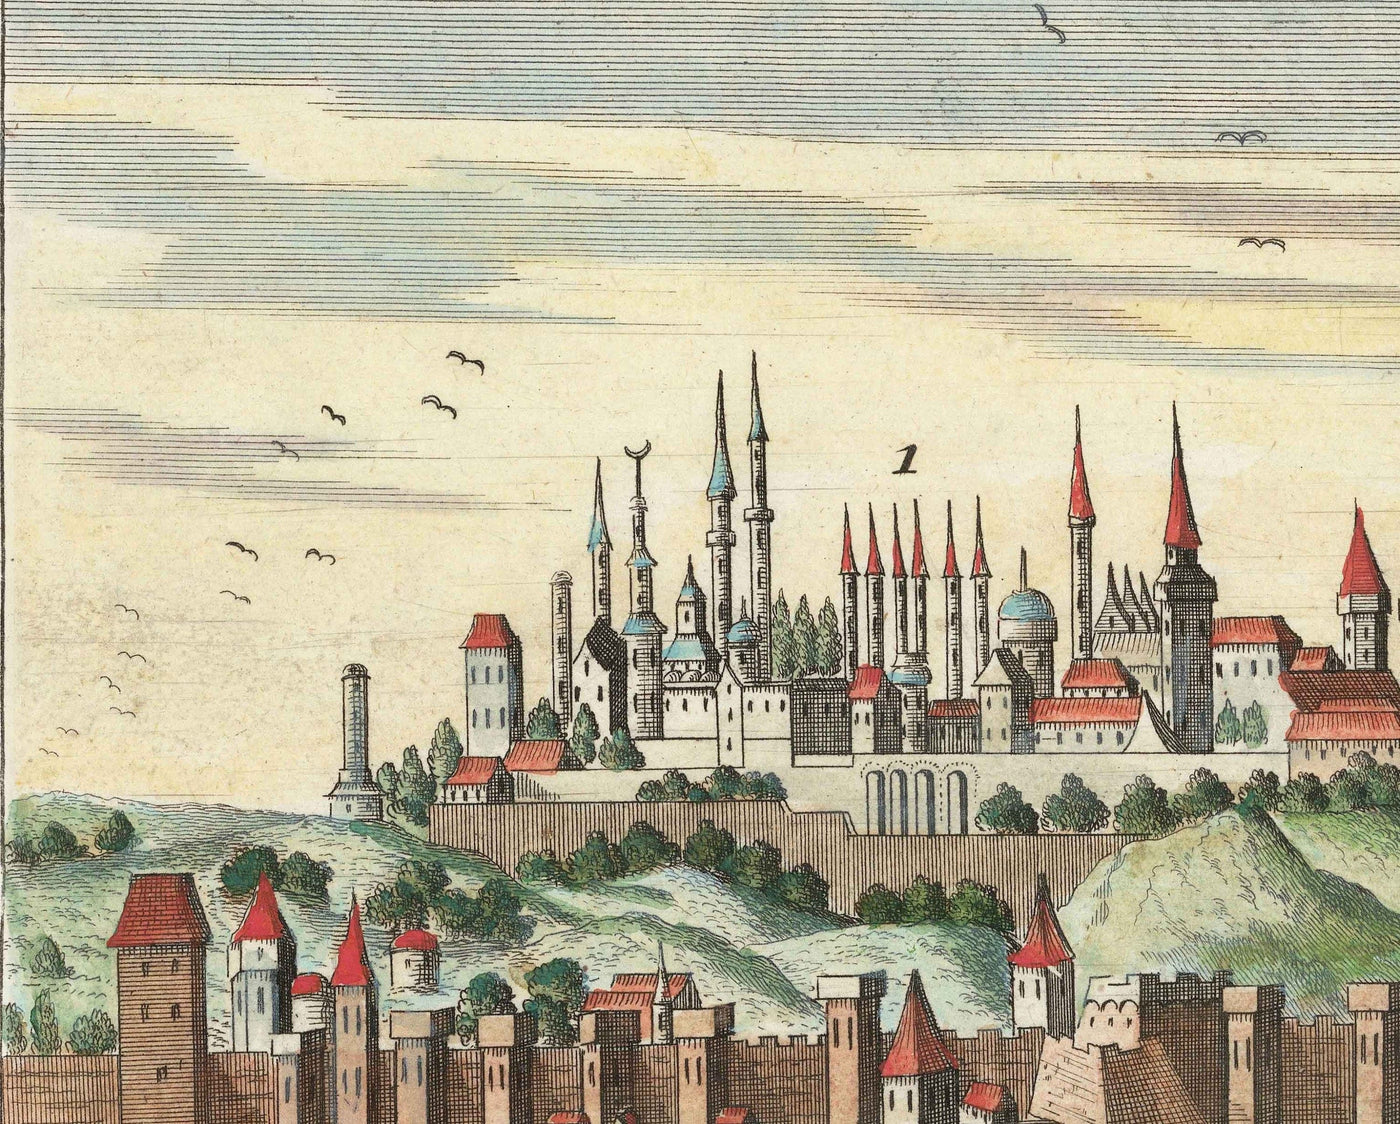 Ancienne carte d'Istanbul (Constantinople) 1720 par Wolff - Architecture ottomane et byzantine - Palais de Topkapi, Sainte-Sophie, mosquées